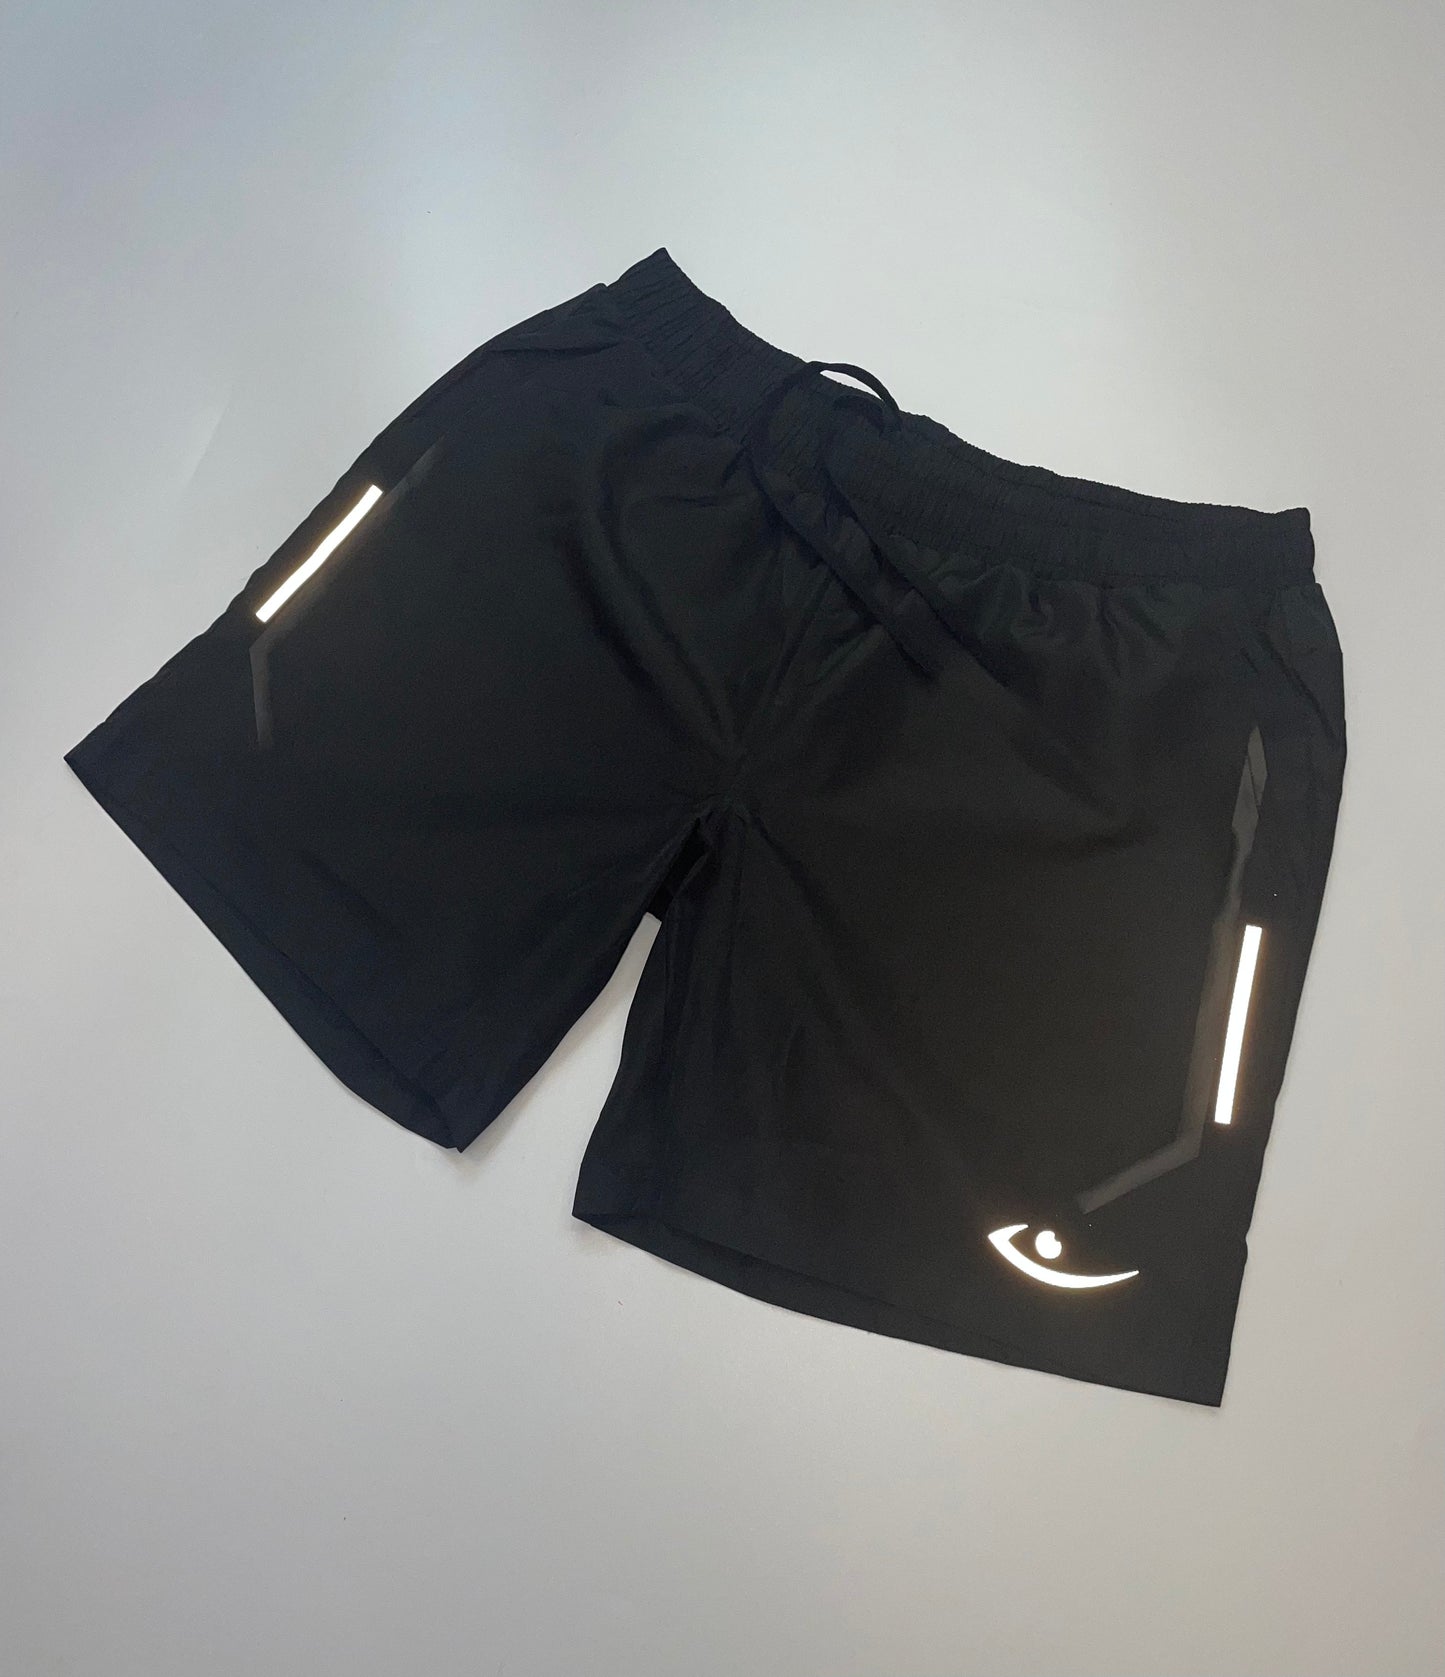 Running Shorts (black)